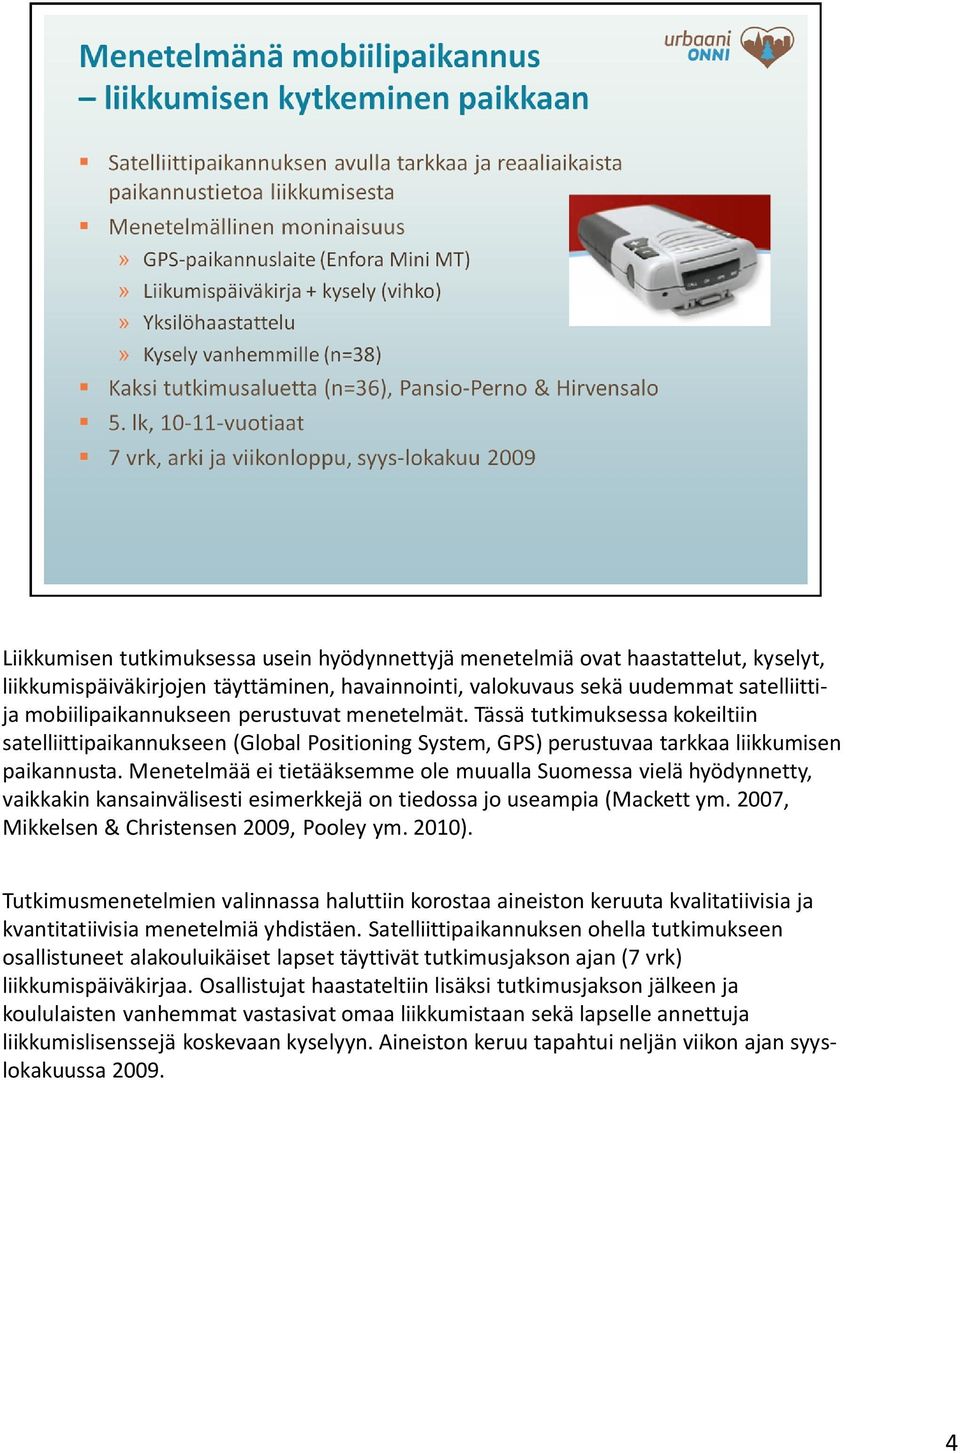 Menetelmää ei tietääksemme ole muualla Suomessa vielä hyödynnetty, vaikkakin kansainvälisesti esimerkkejä on tiedossa jo useampia (Mackett ym. 2007, Mikkelsen & Christensen 2009, Pooley ym. 2010).